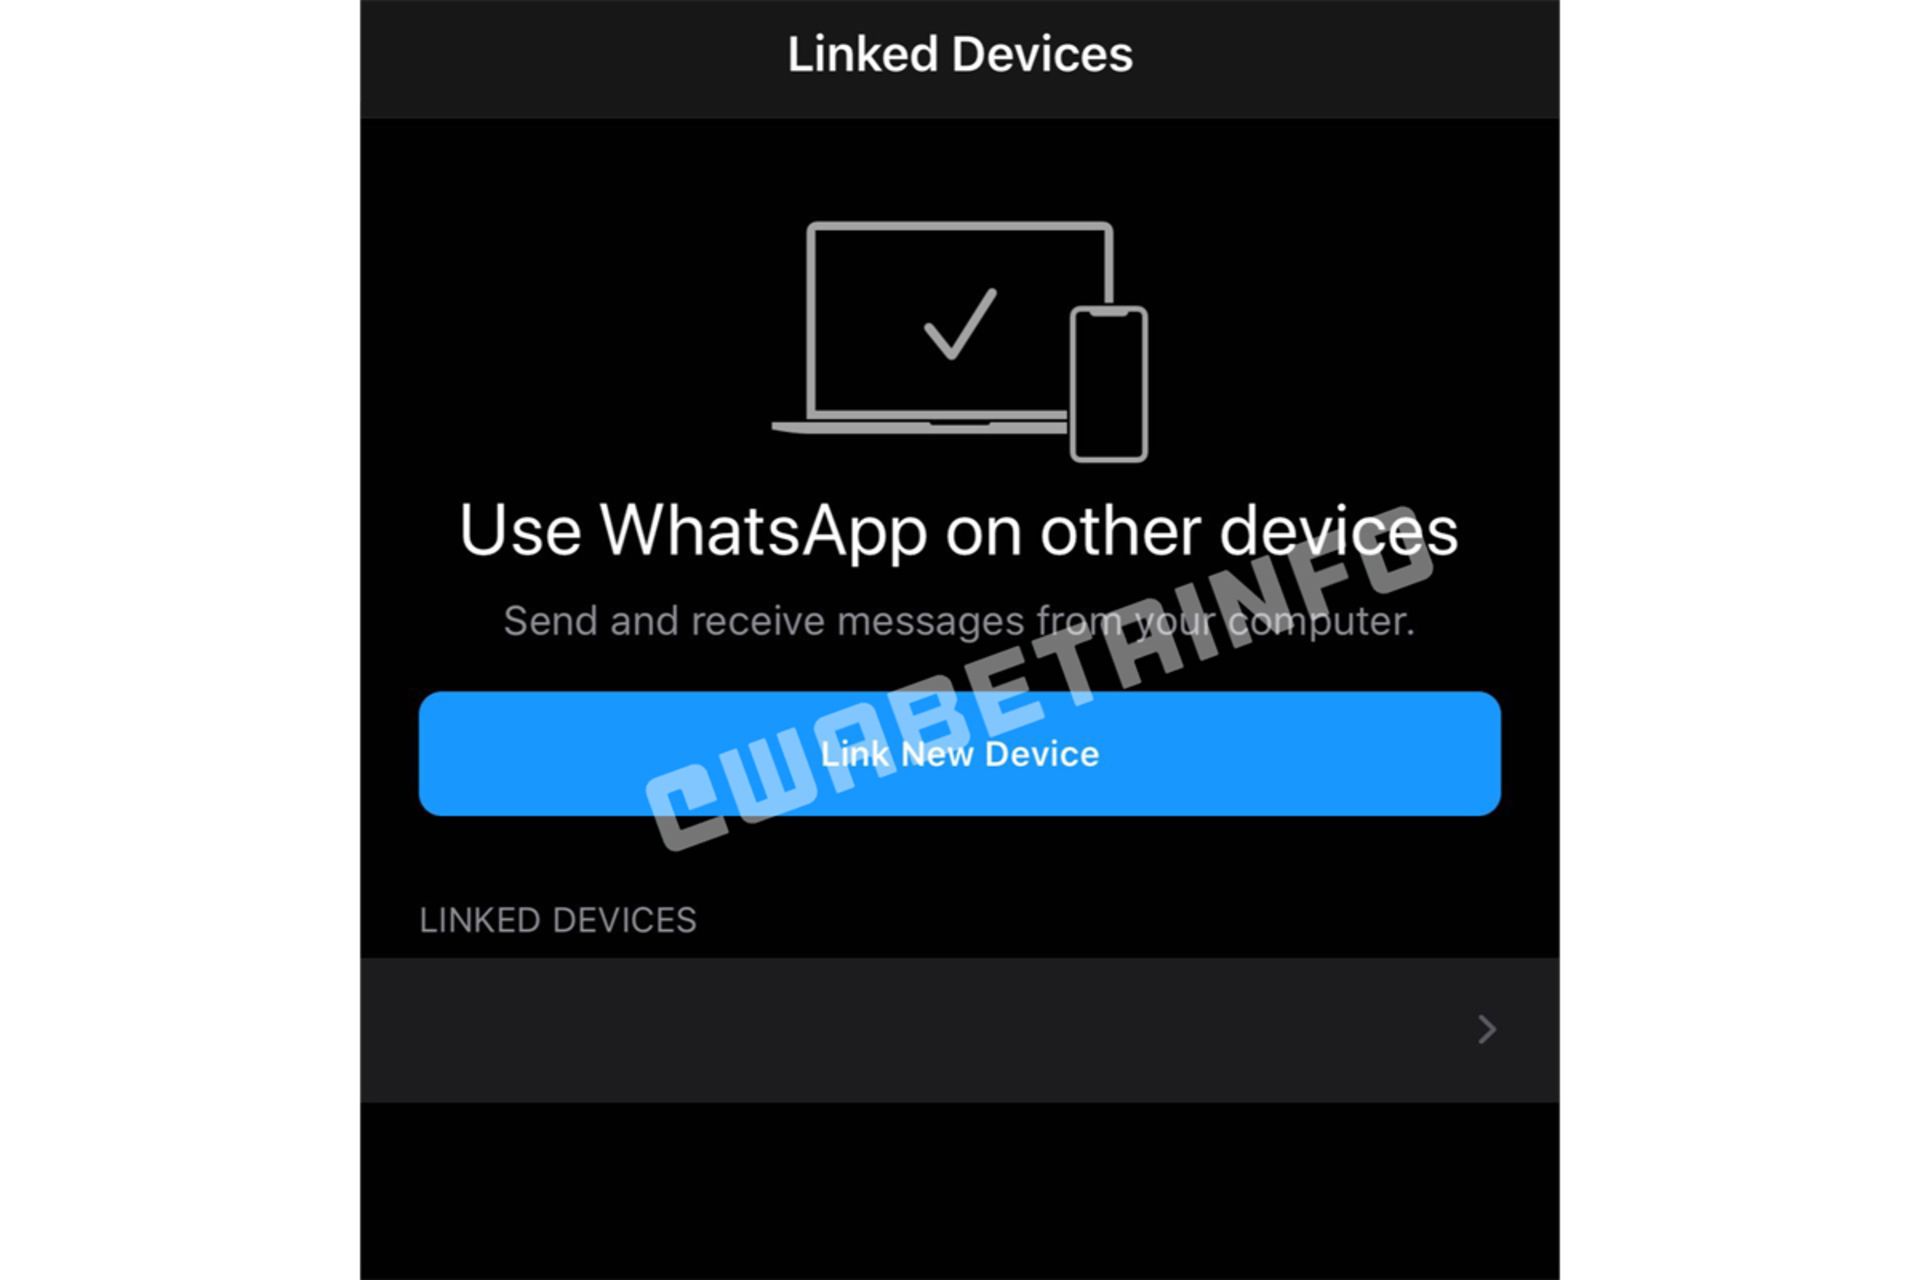 رابط کاربری قابلیت اتصال چند دستگاه به حساب واتساپ / WhatsApp در آی او اس / iOS